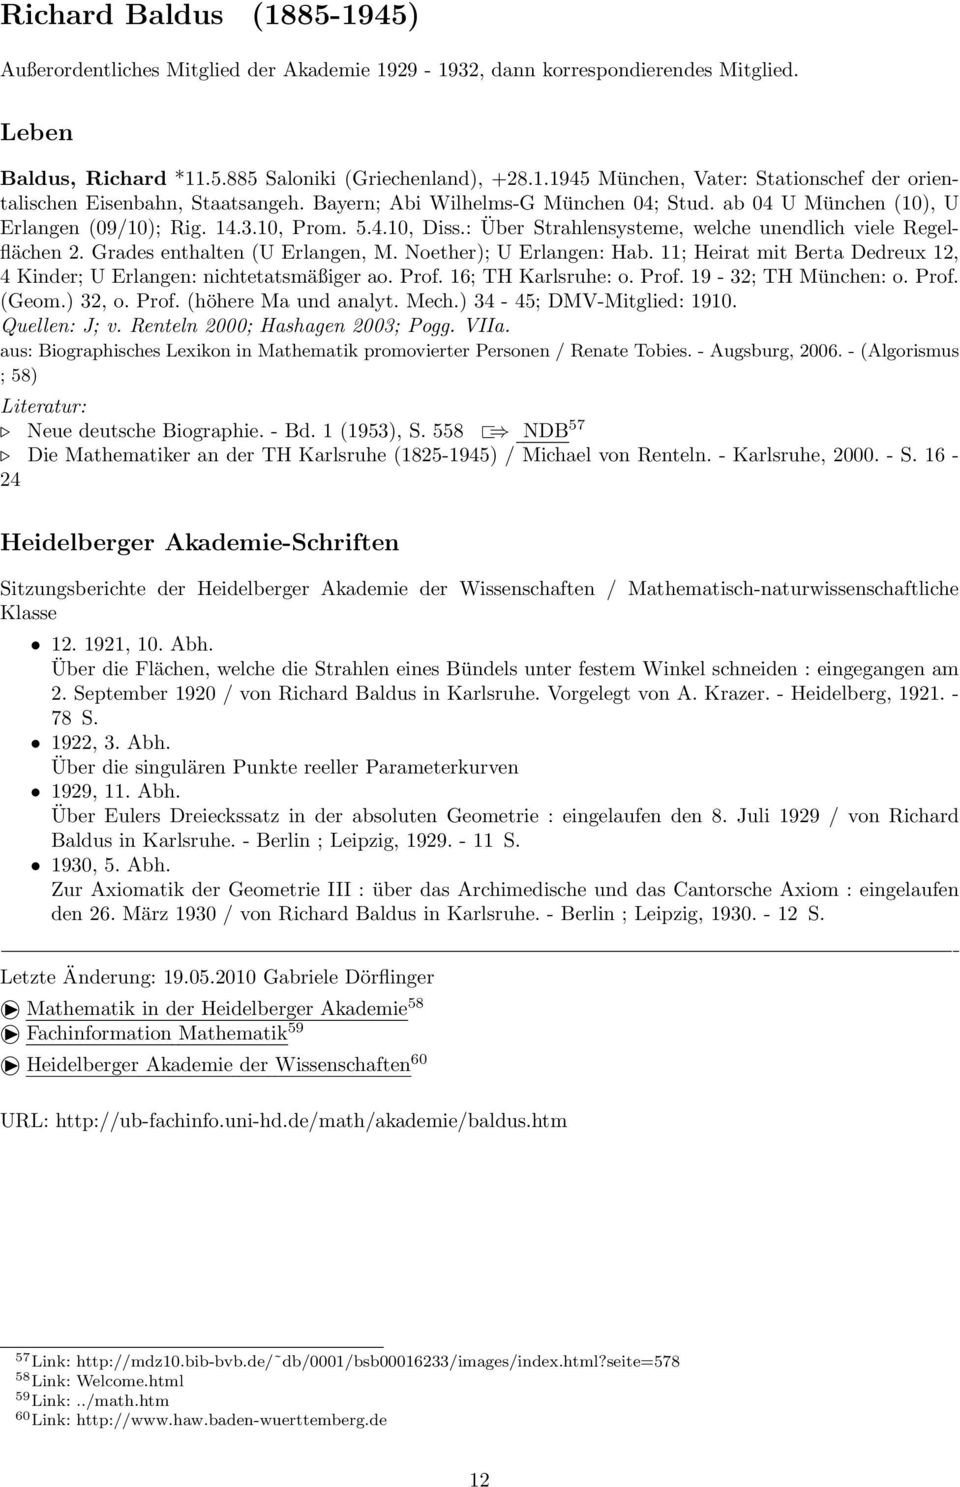 Grades enthalten (U Erlangen, M. Noether); U Erlangen: Hab. 11; Heirat mit Berta Dedreux 12, 4 Kinder; U Erlangen: nichtetatsmäßiger ao. Prof. 16; TH Karlsruhe: o. Prof. 19-32; TH München: o. Prof. (Geom.